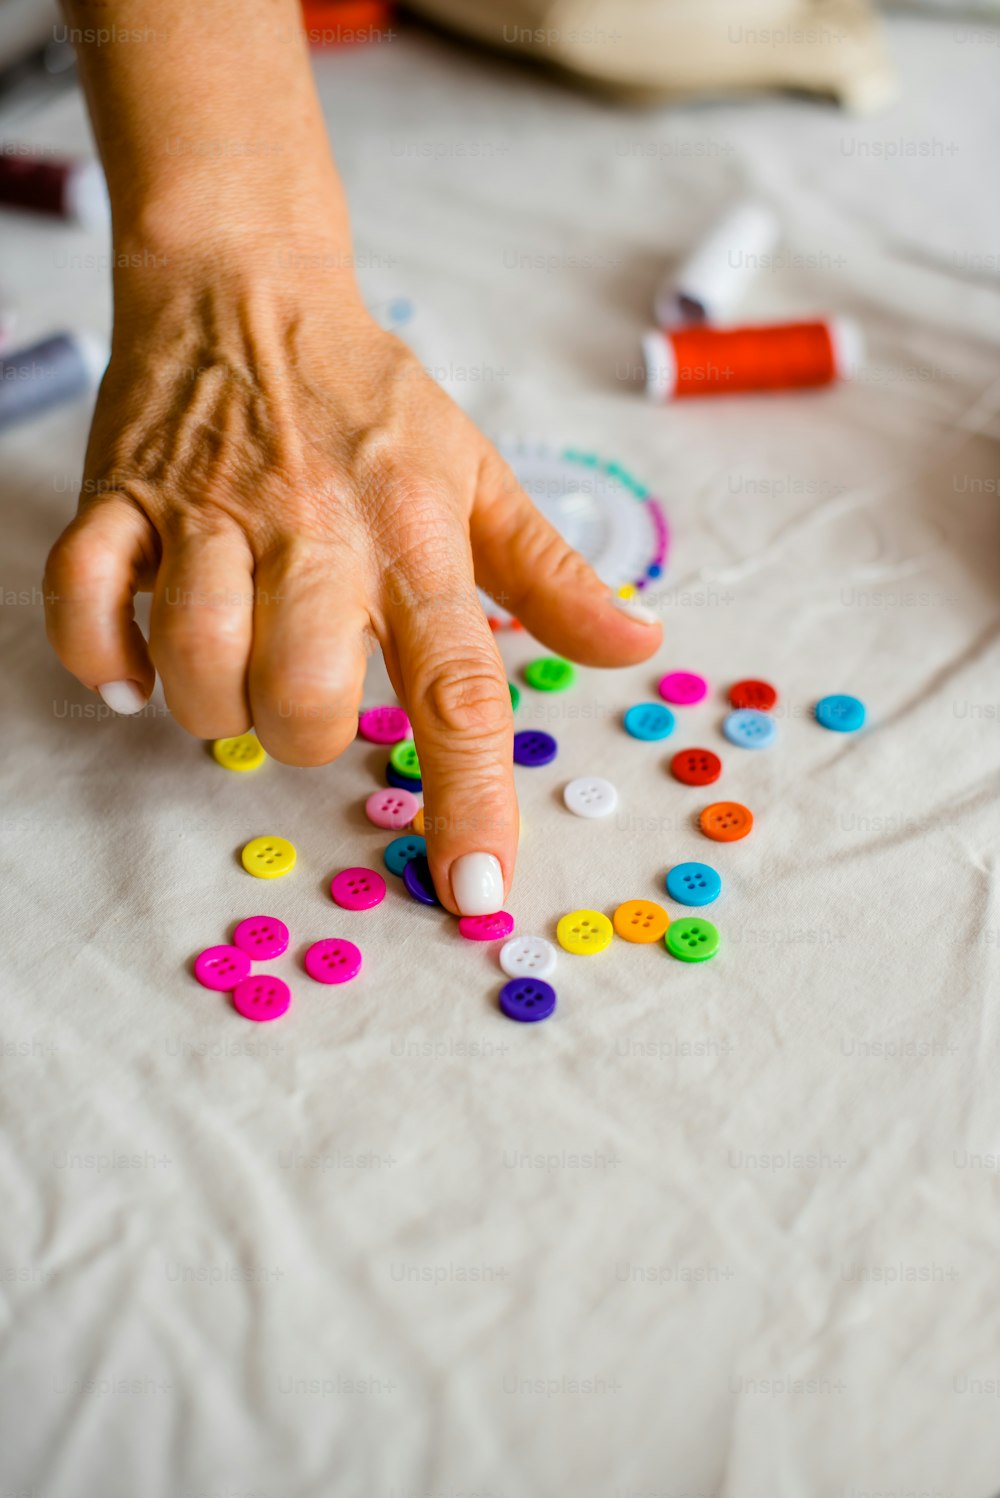 La mano de una persona buscando botones coloridos en una mesa